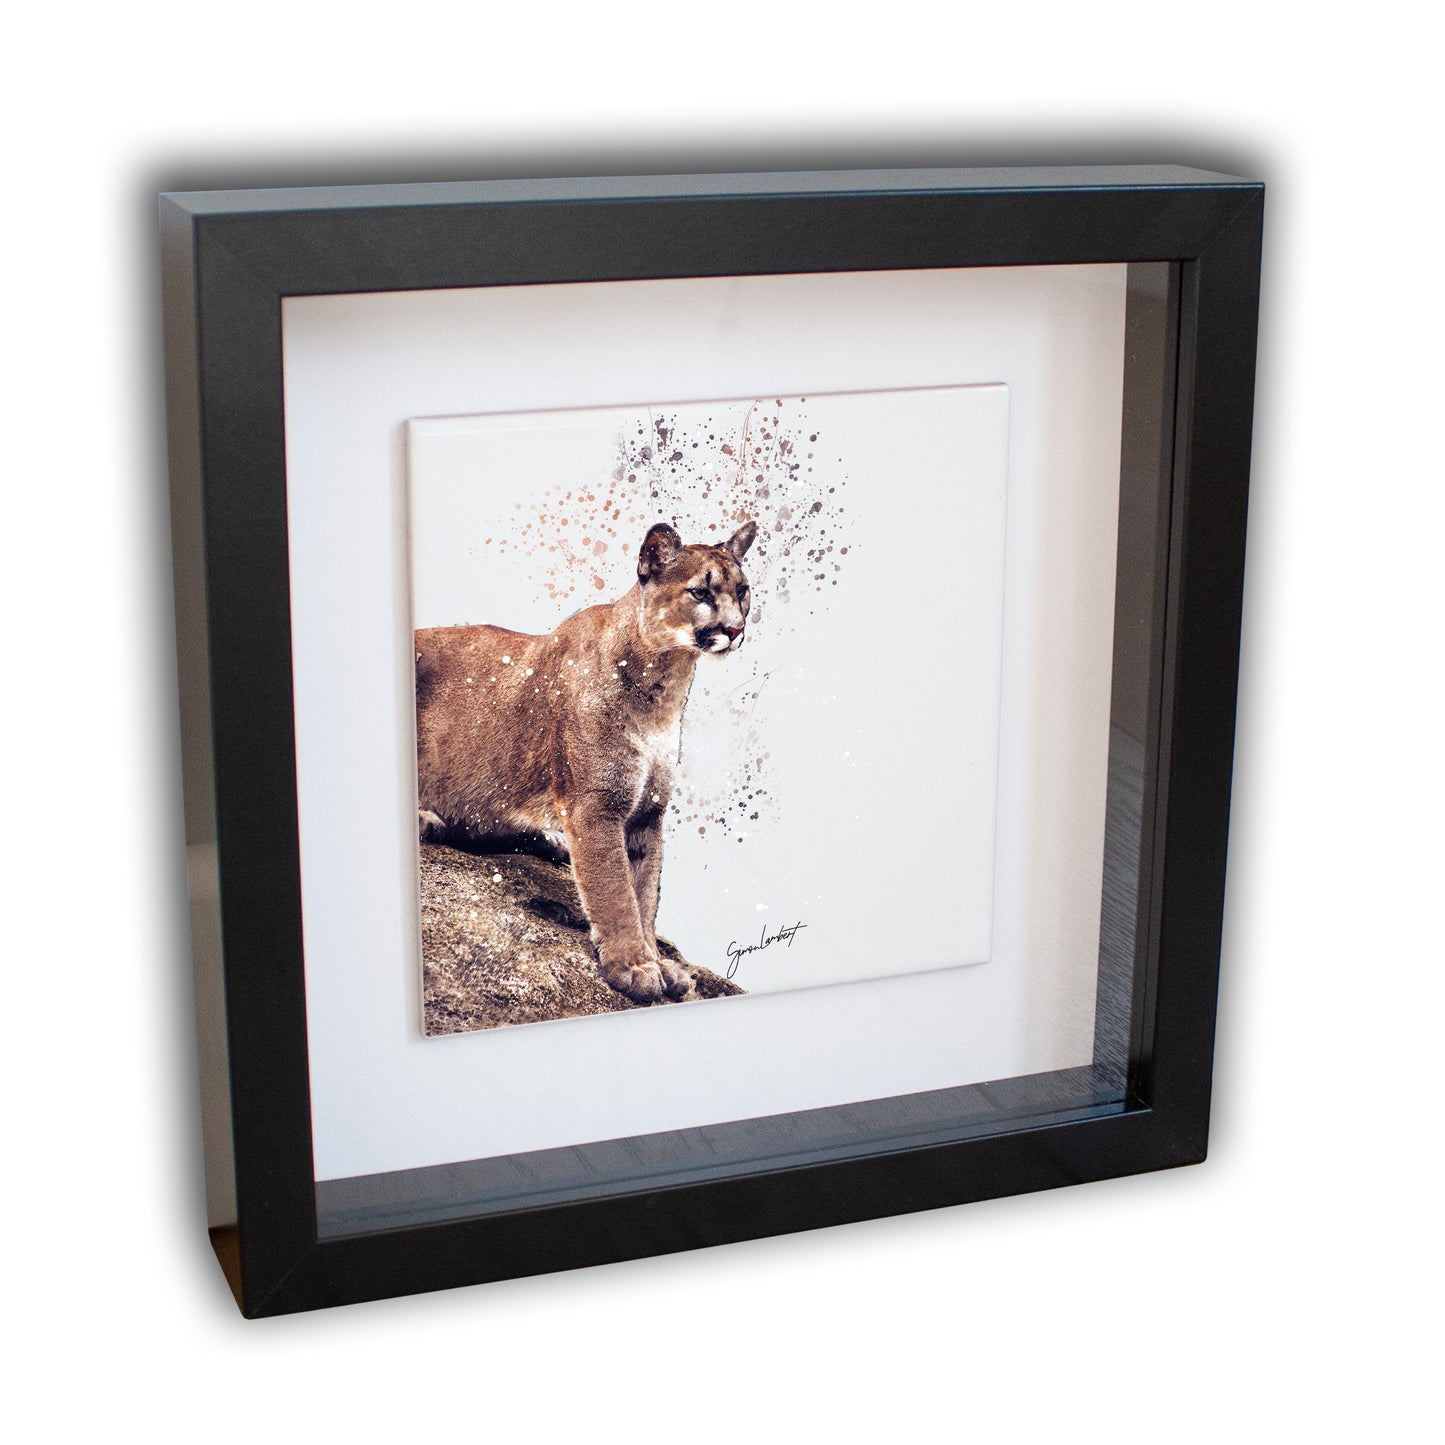 Cougar Portrait Brush Splatter Style Artwork - Framed CERAMIC TILE Art